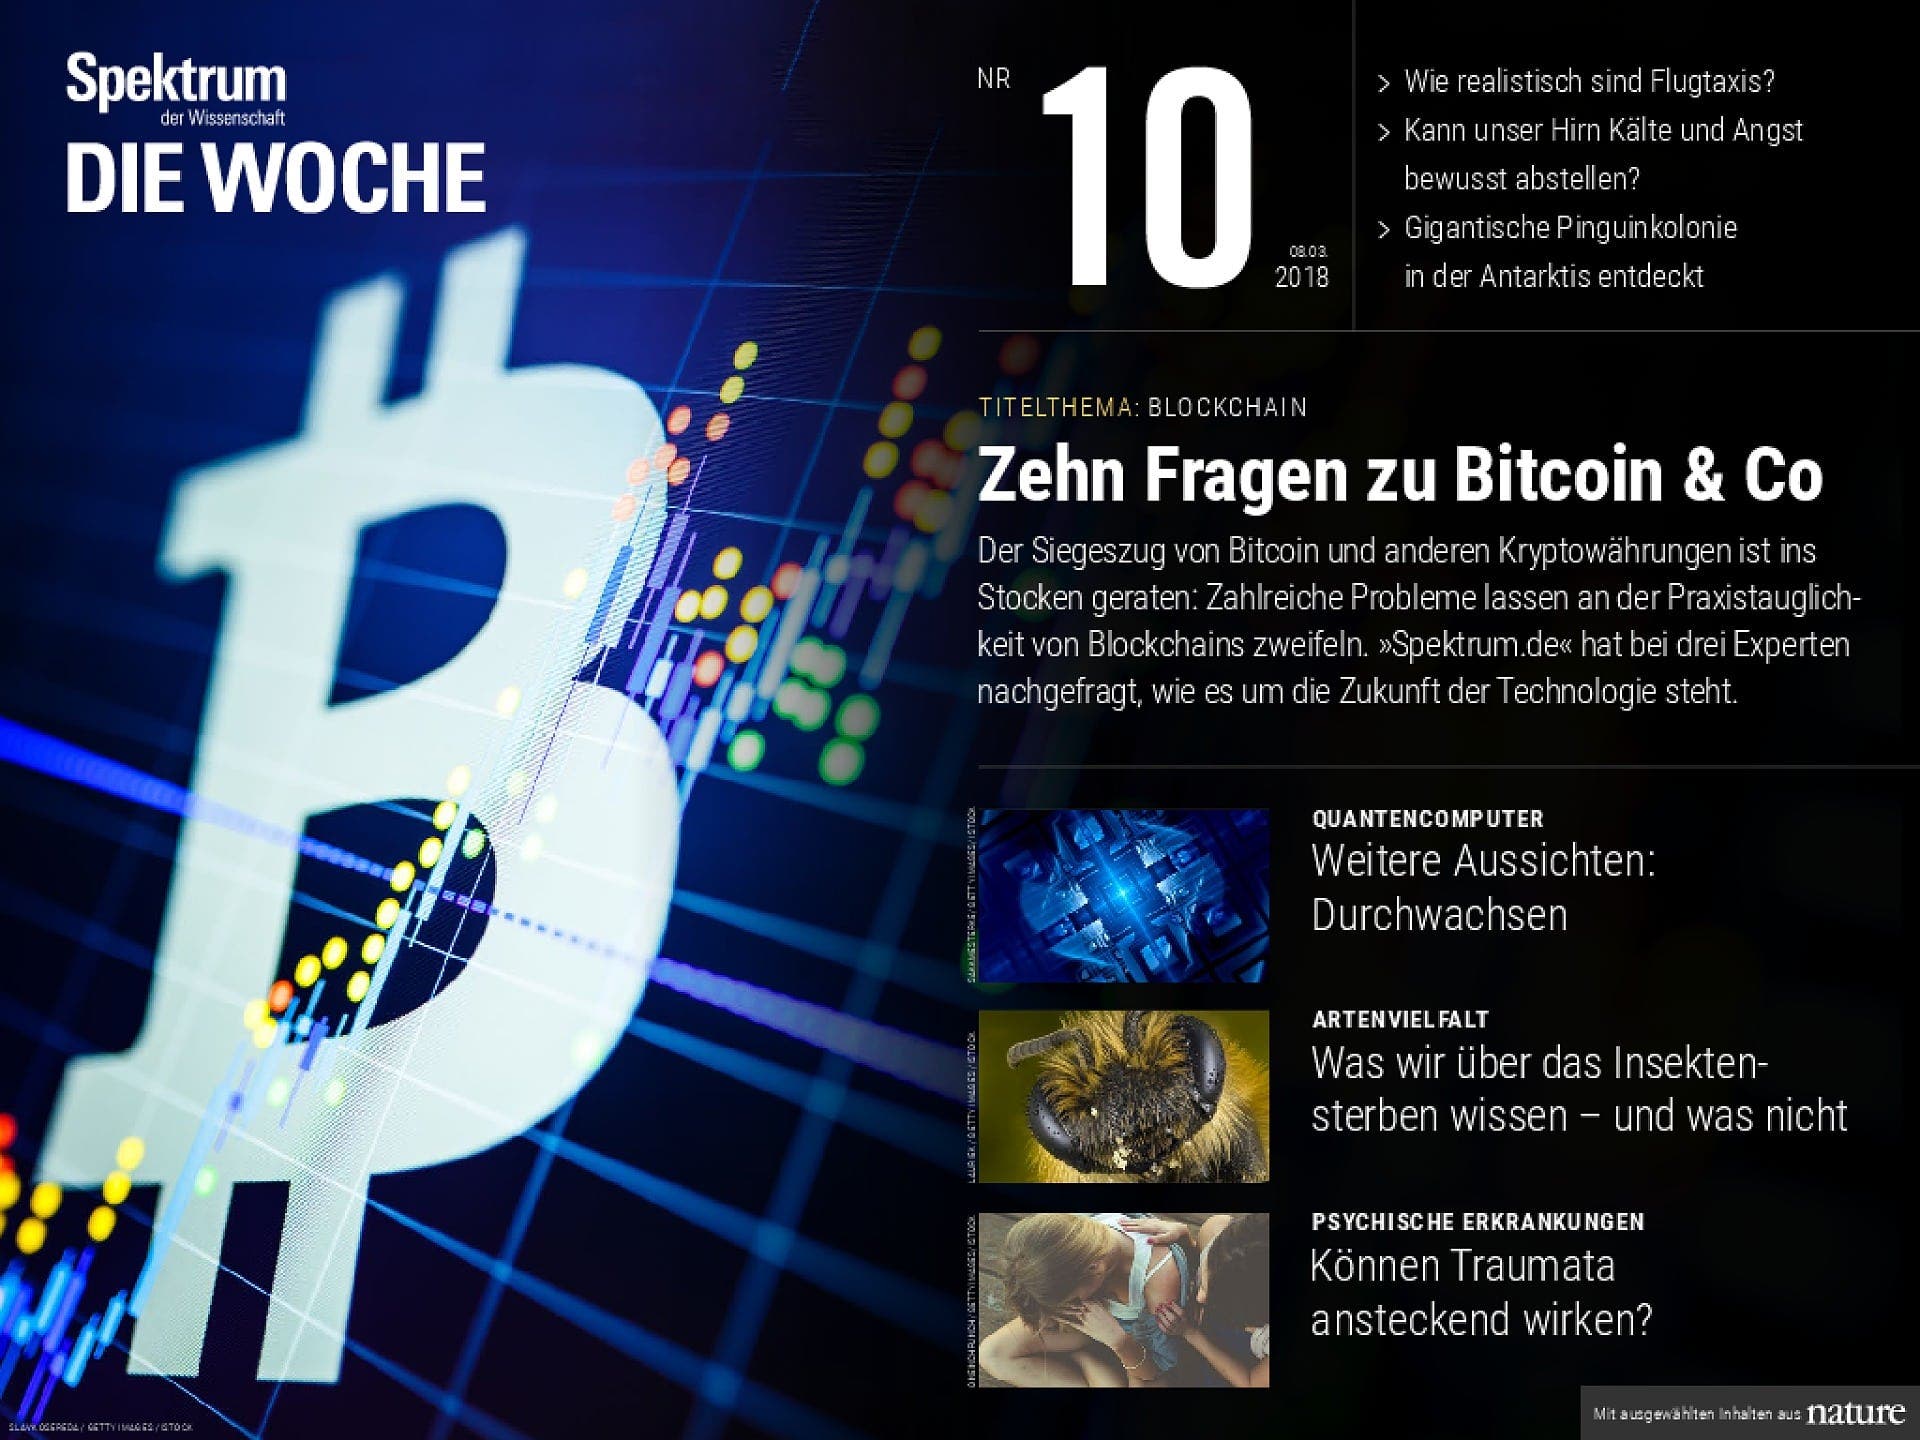 Zehn Fragen zu Bitcoin & Co.